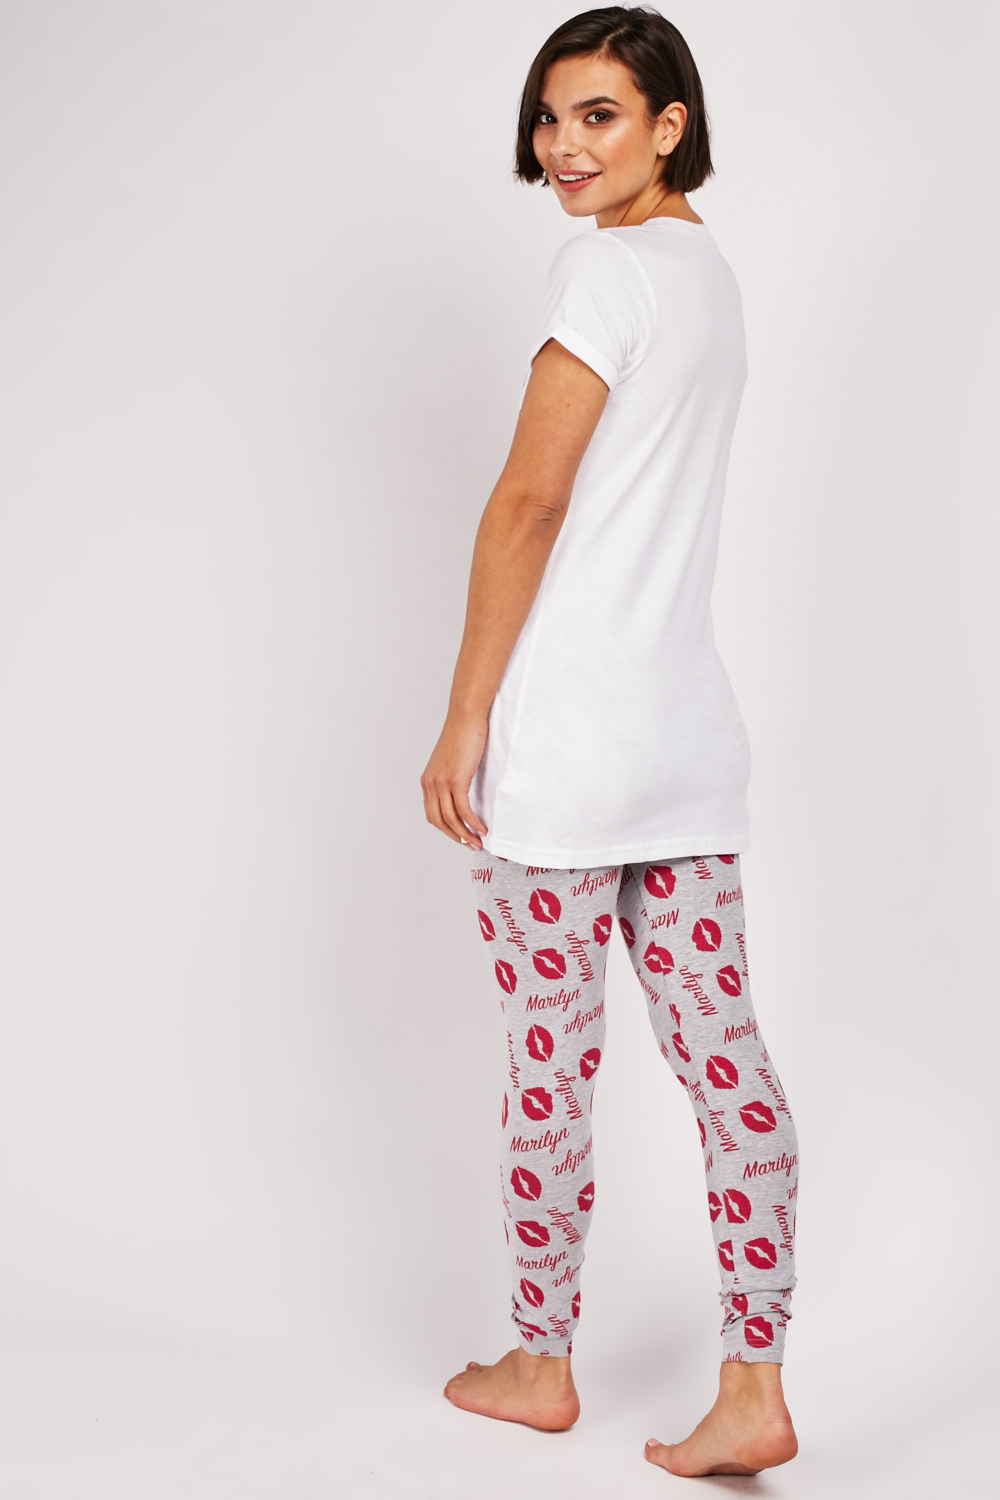 Marilyn Monroe Print Pyjama Set - Just $7